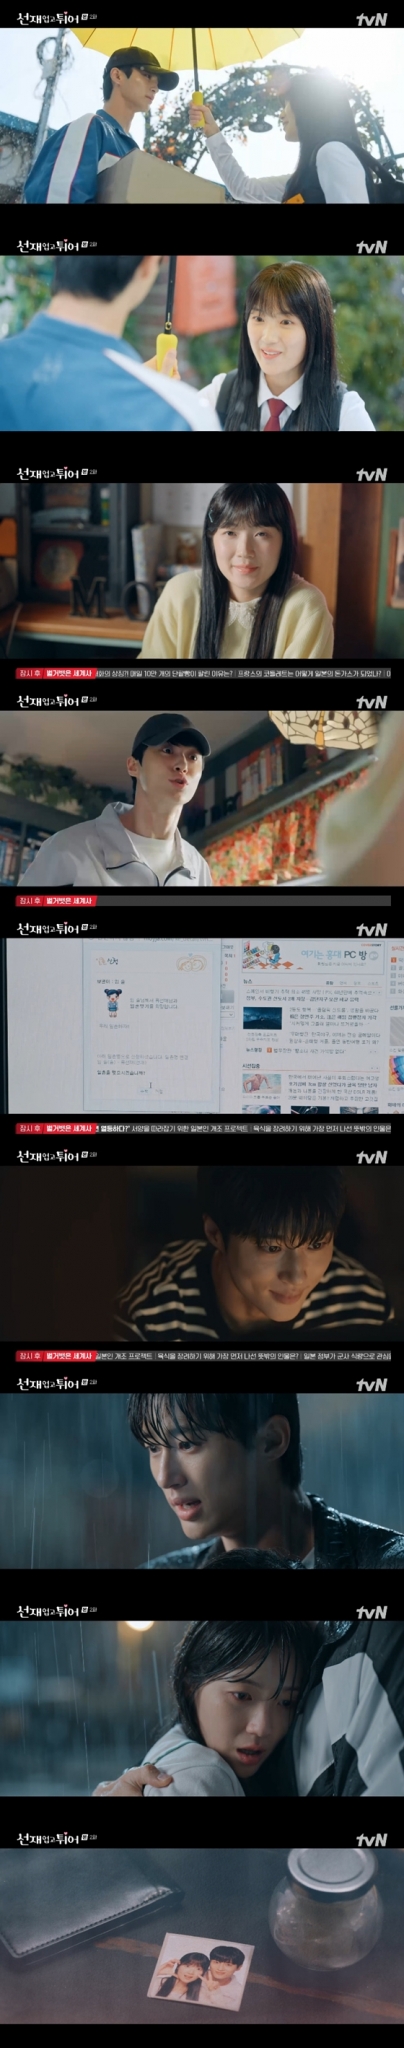 tvN 월화드라마 '선재 업고 튀어'./사진=tvN 월화드라마 '선재 업고 튀어' 방송 화면 캡처